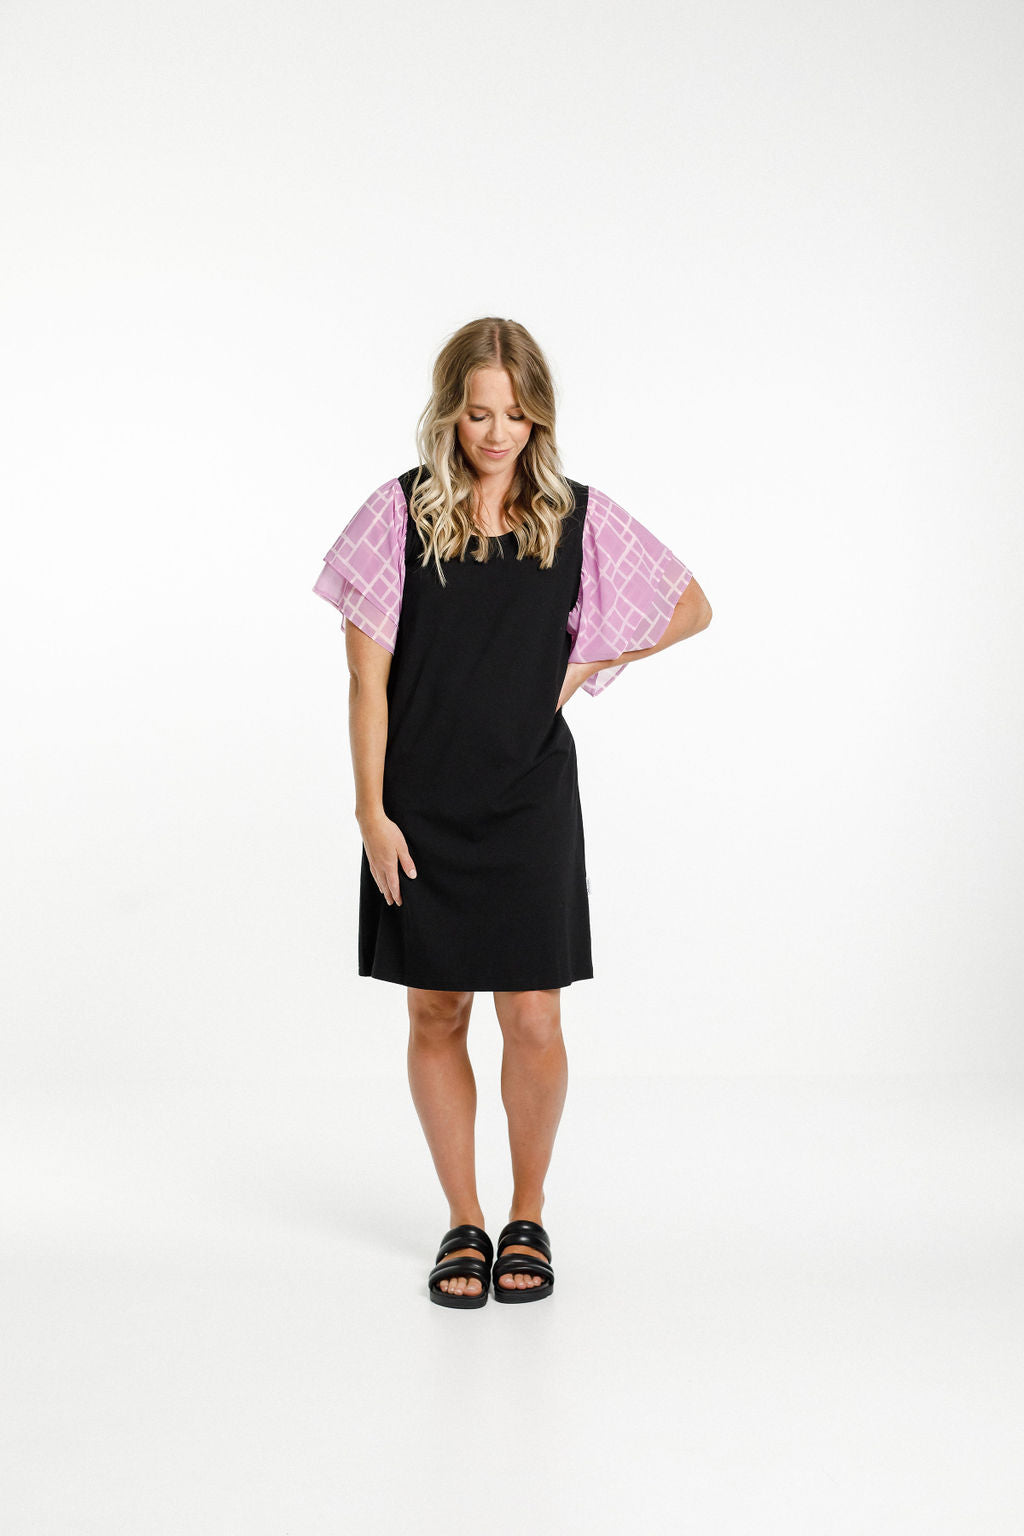 Lola Dress - Sale - Black with Pink Bloom Print Sleeves